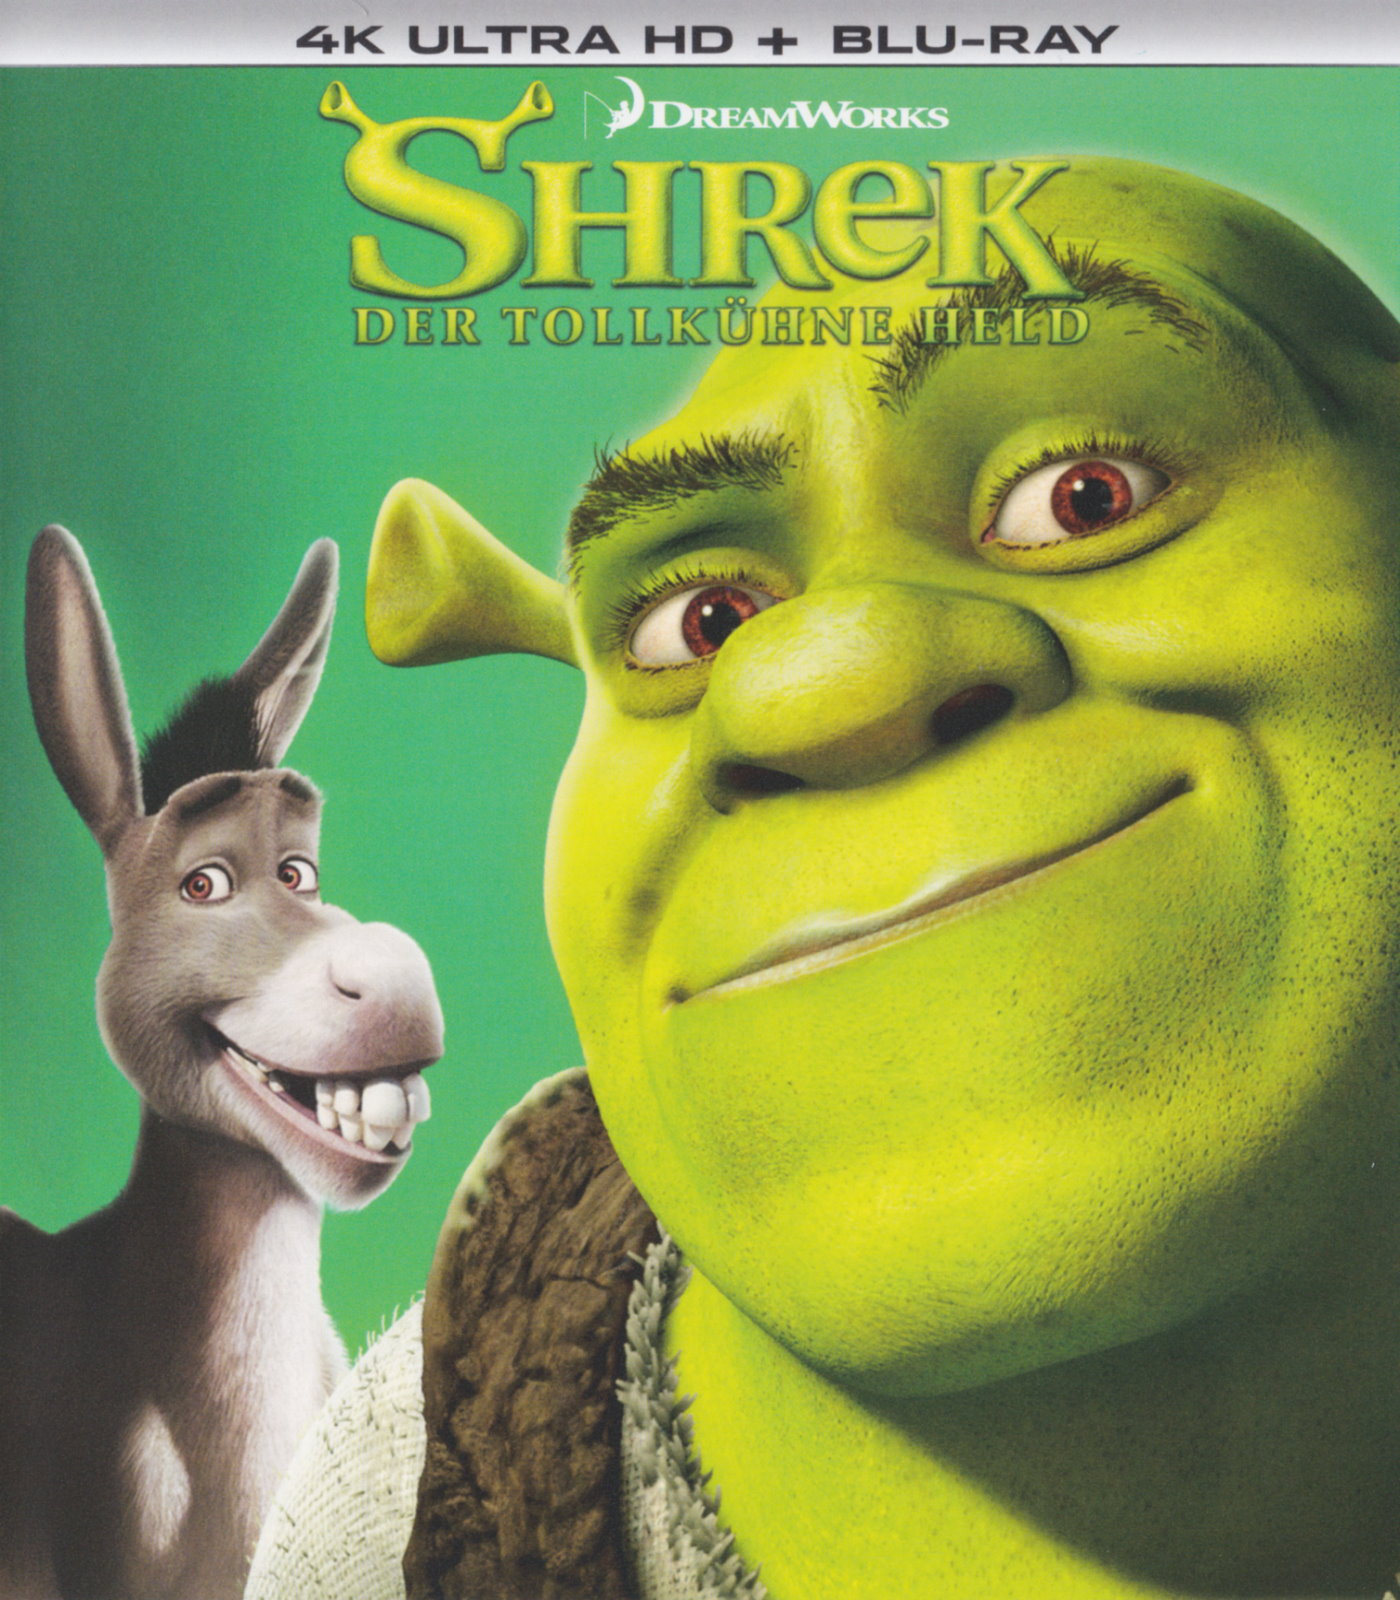 Cover - Shrek - Der tollkühne Held.jpg